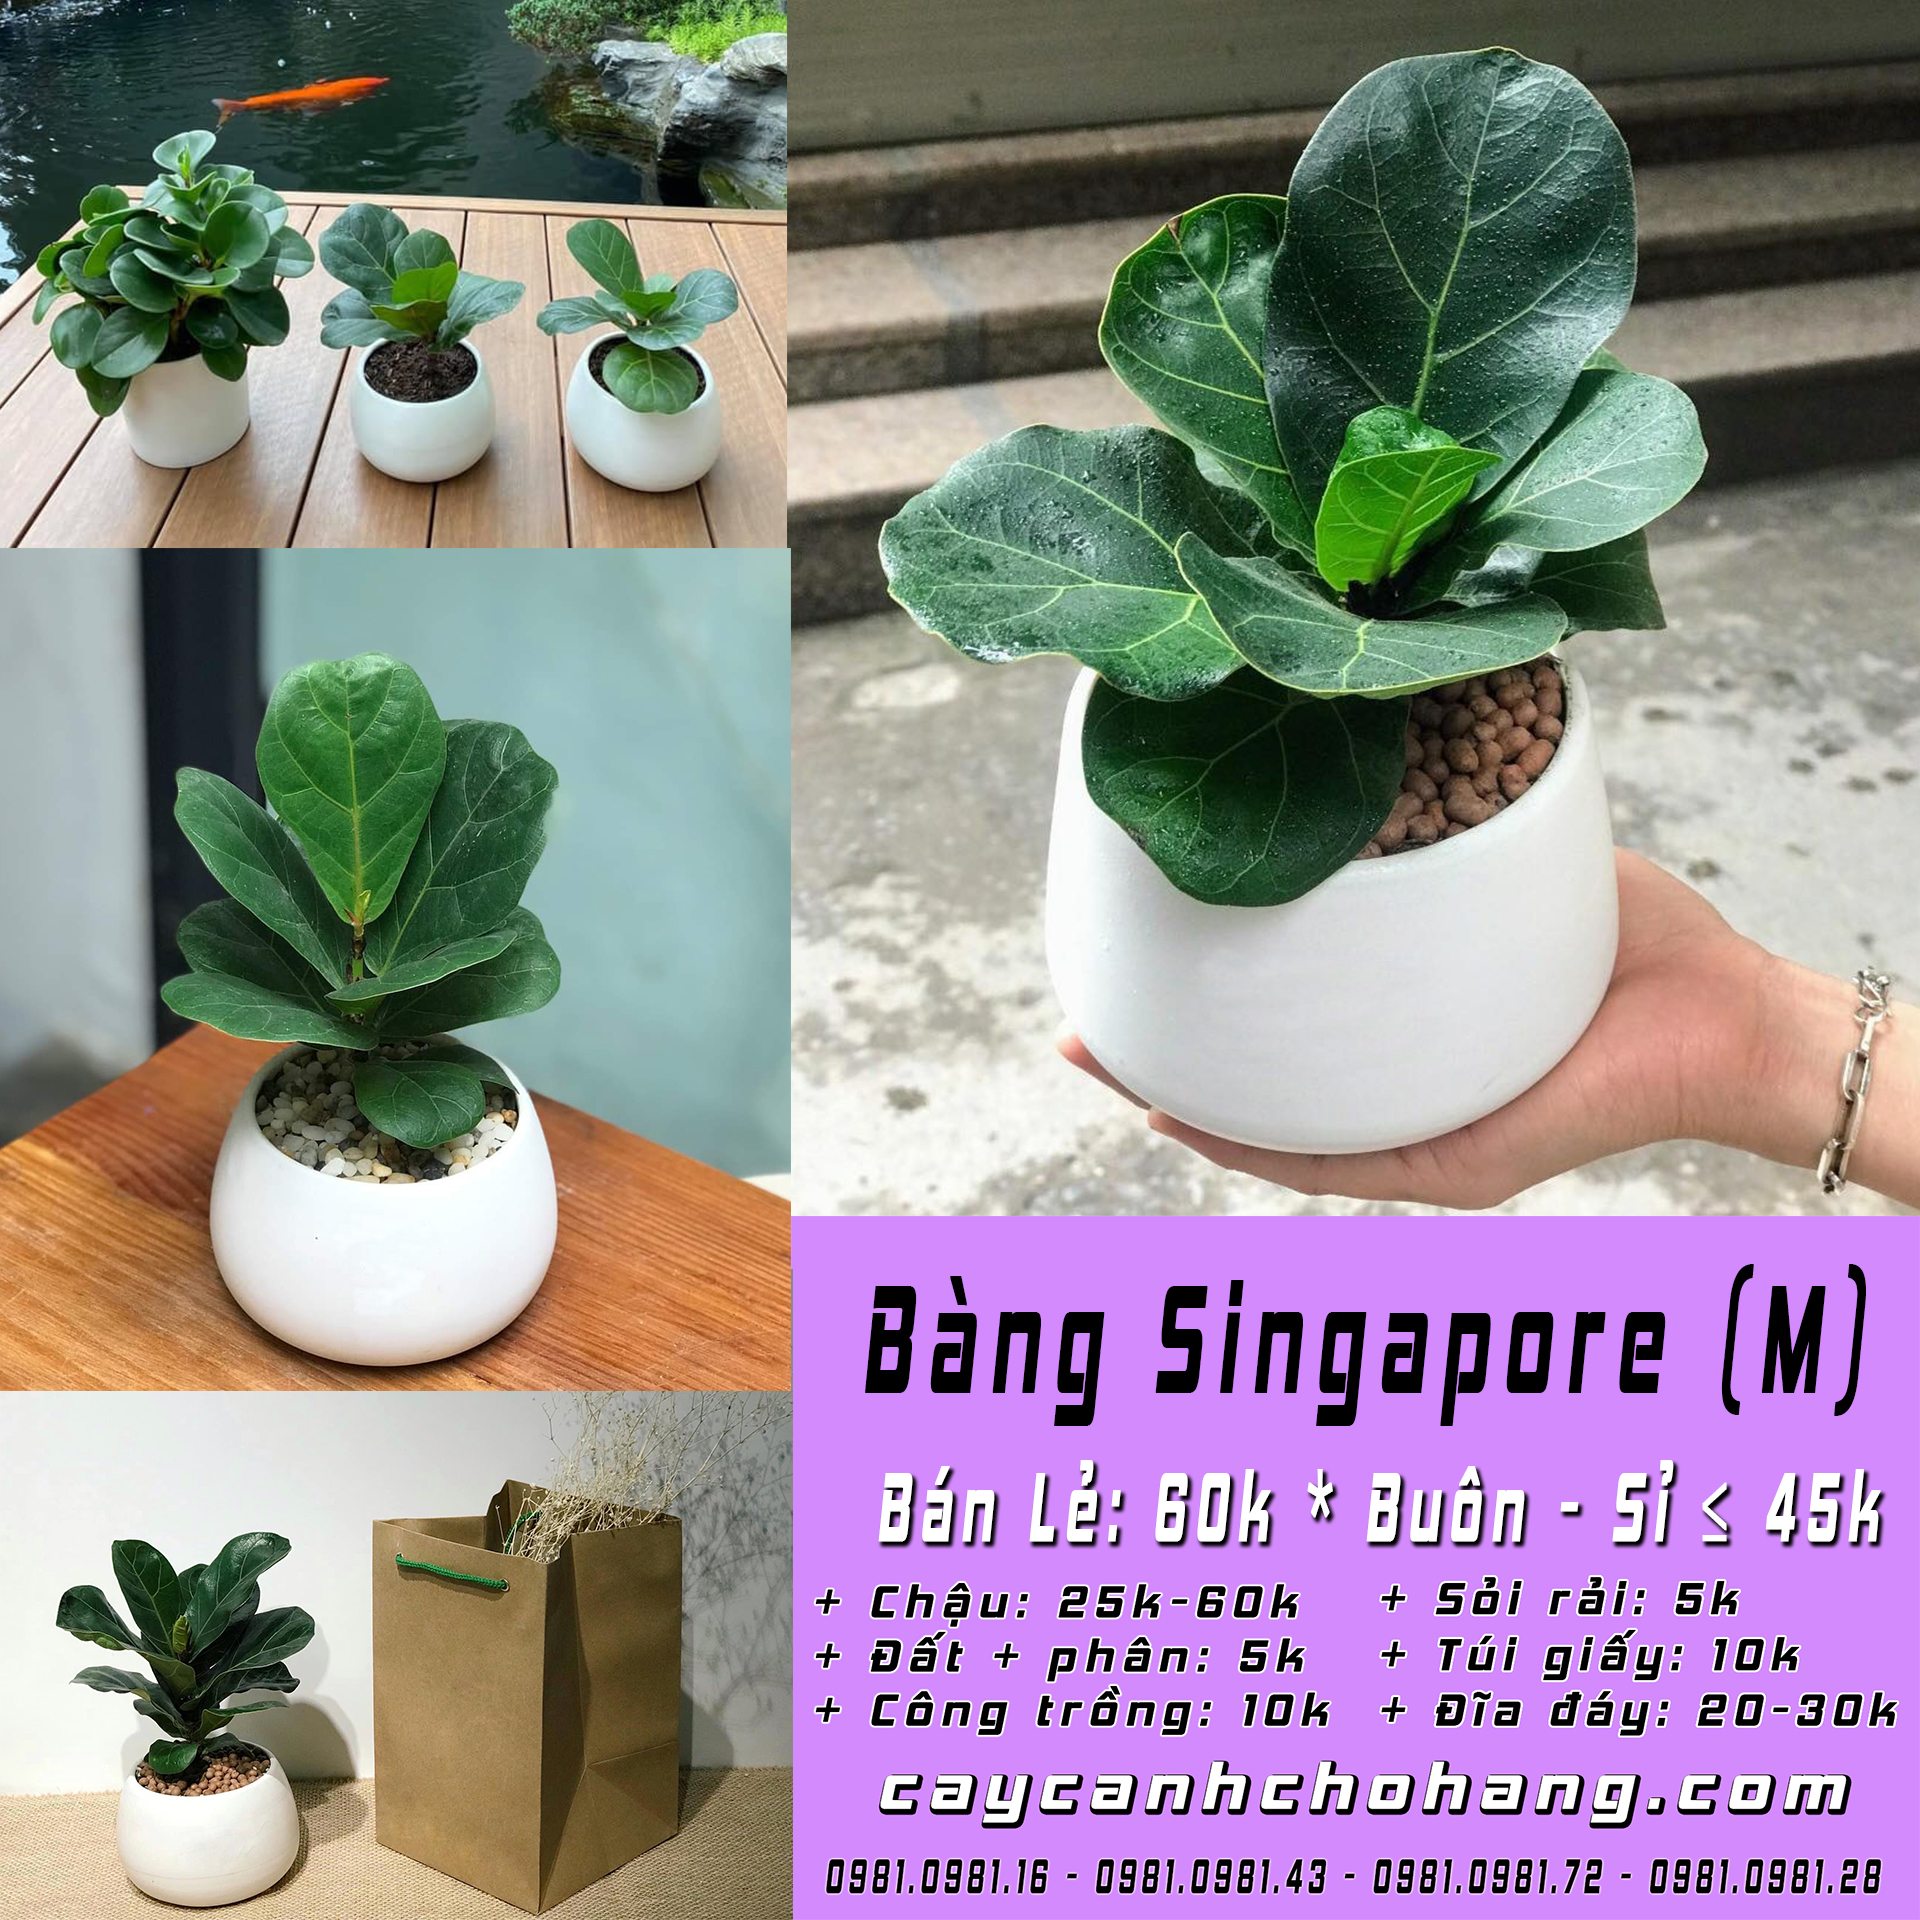 bang Singapore